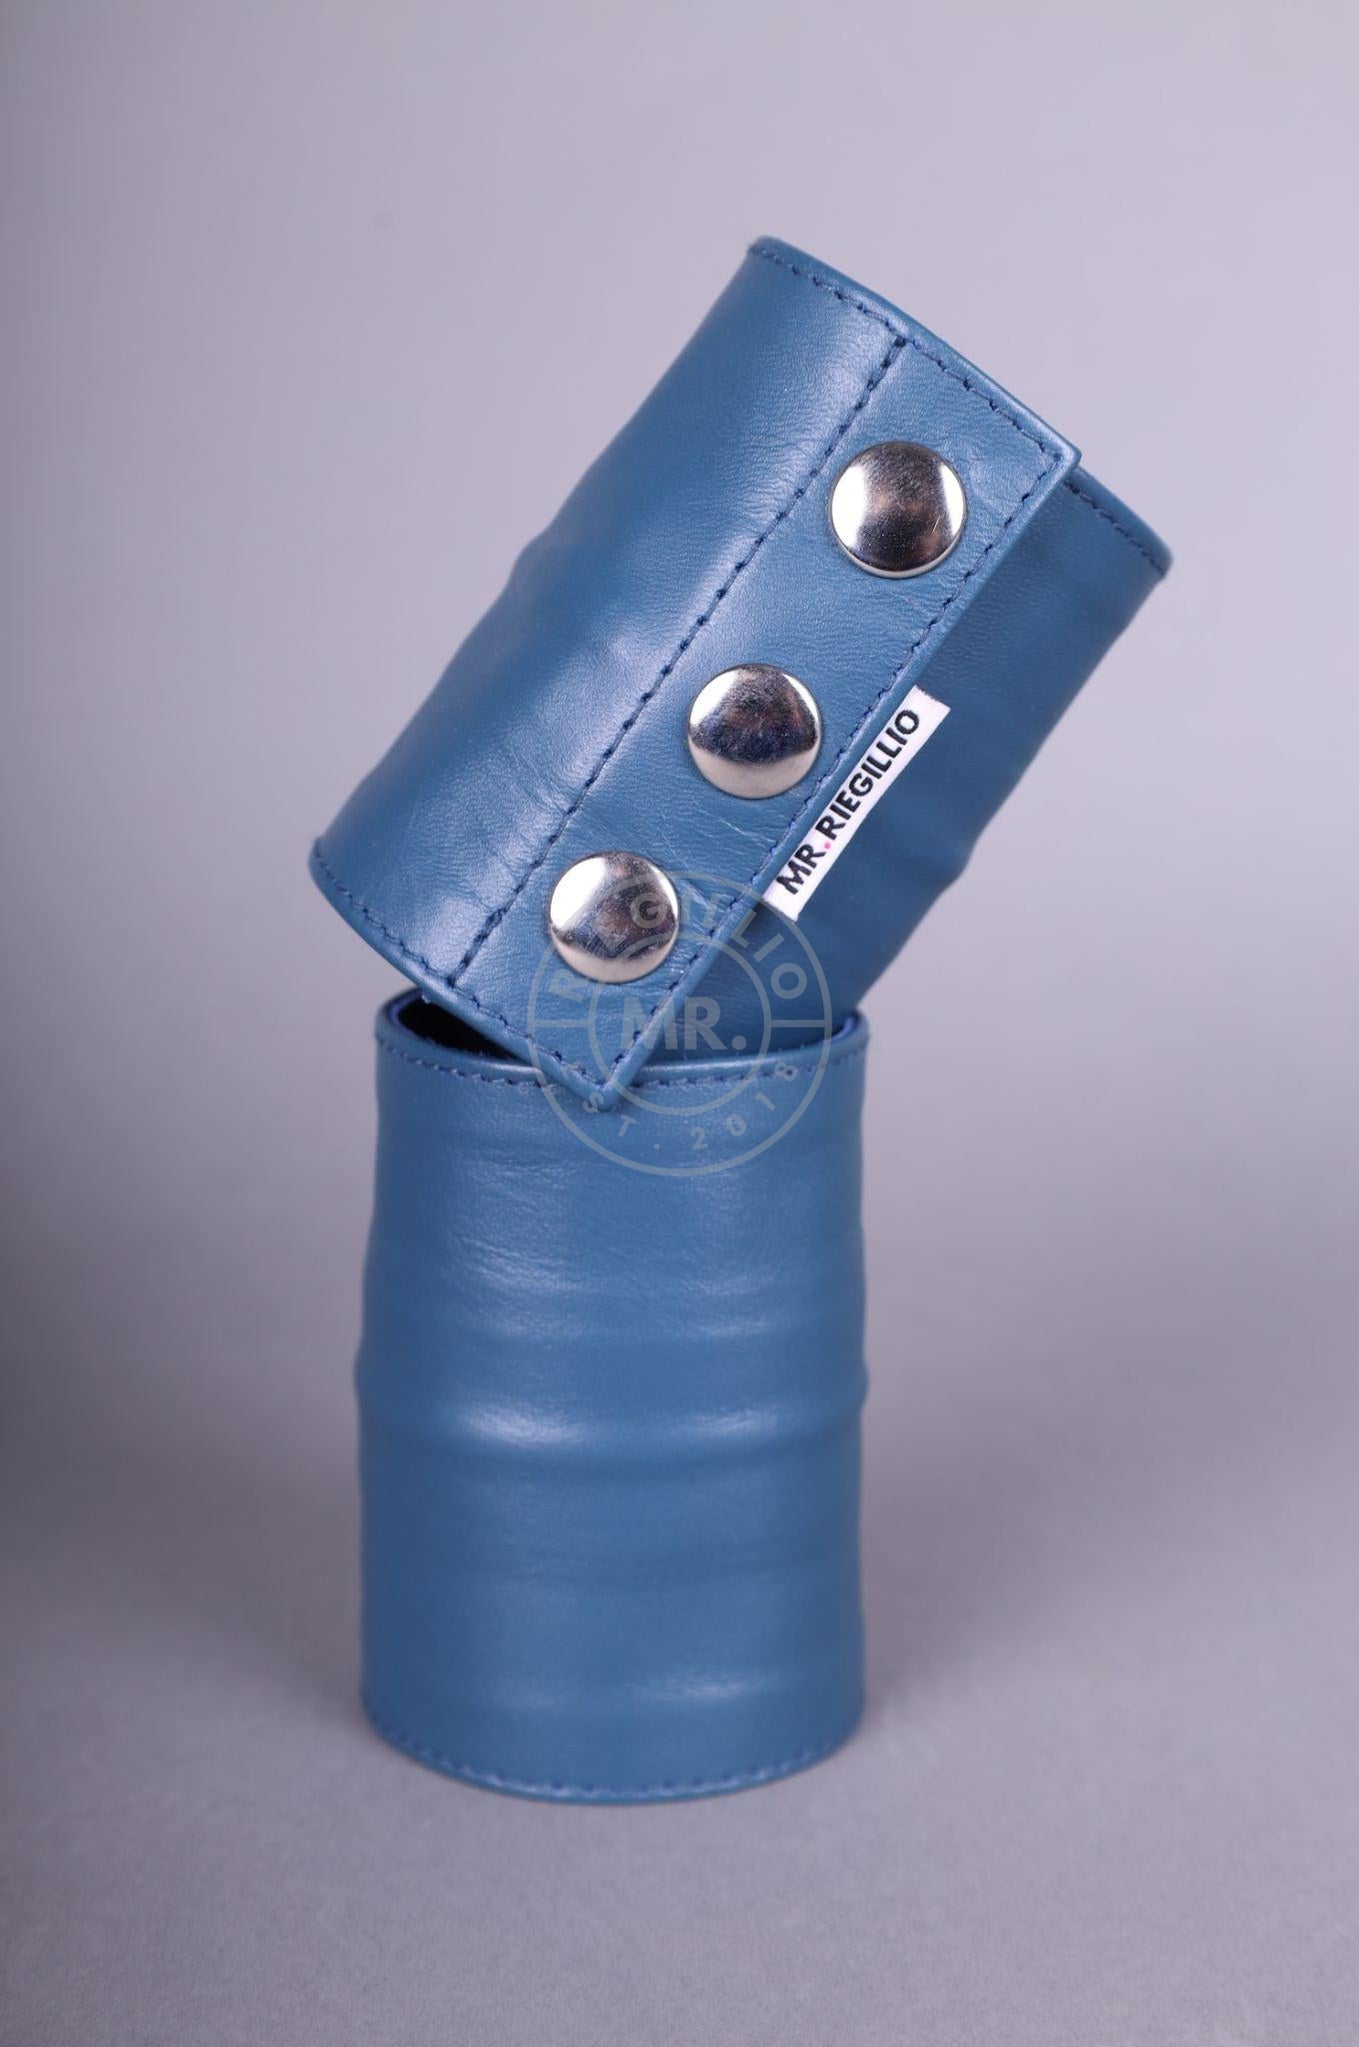 Jeans Blue Wrist Wallet-at MR. Riegillio